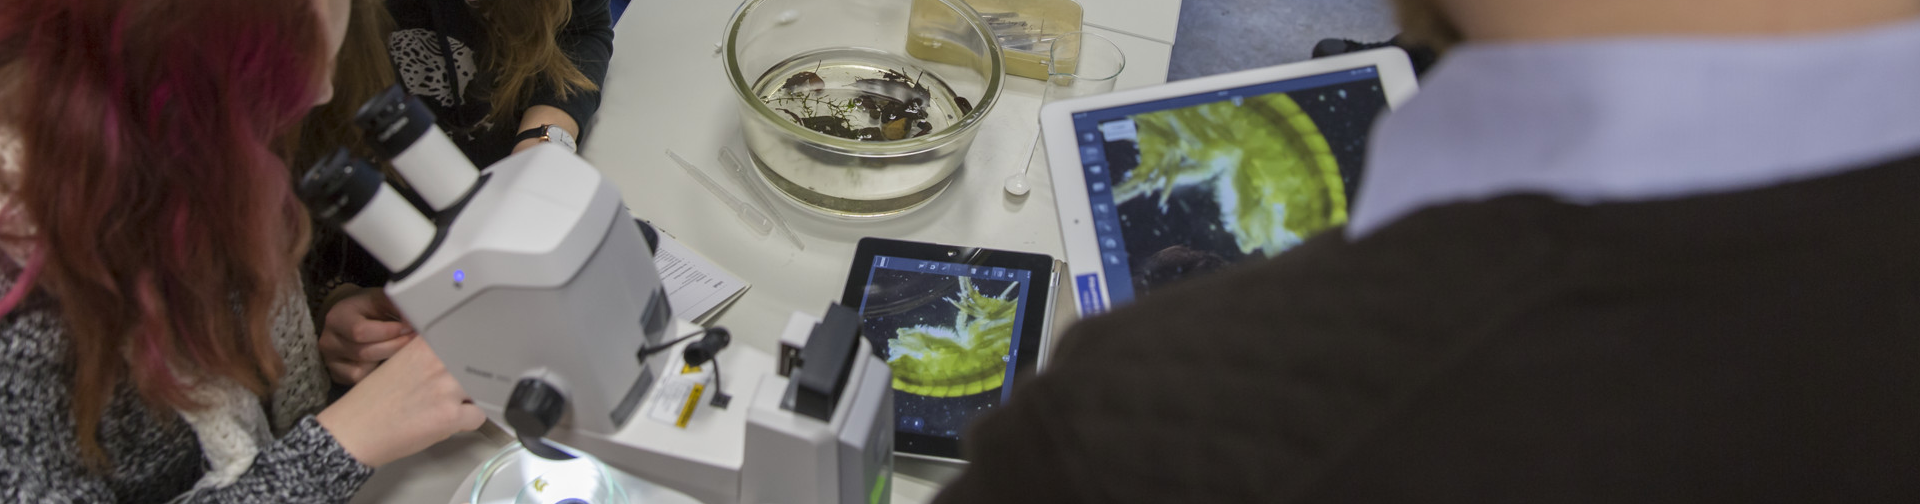 Soluciones de microscopía para aulas digitales